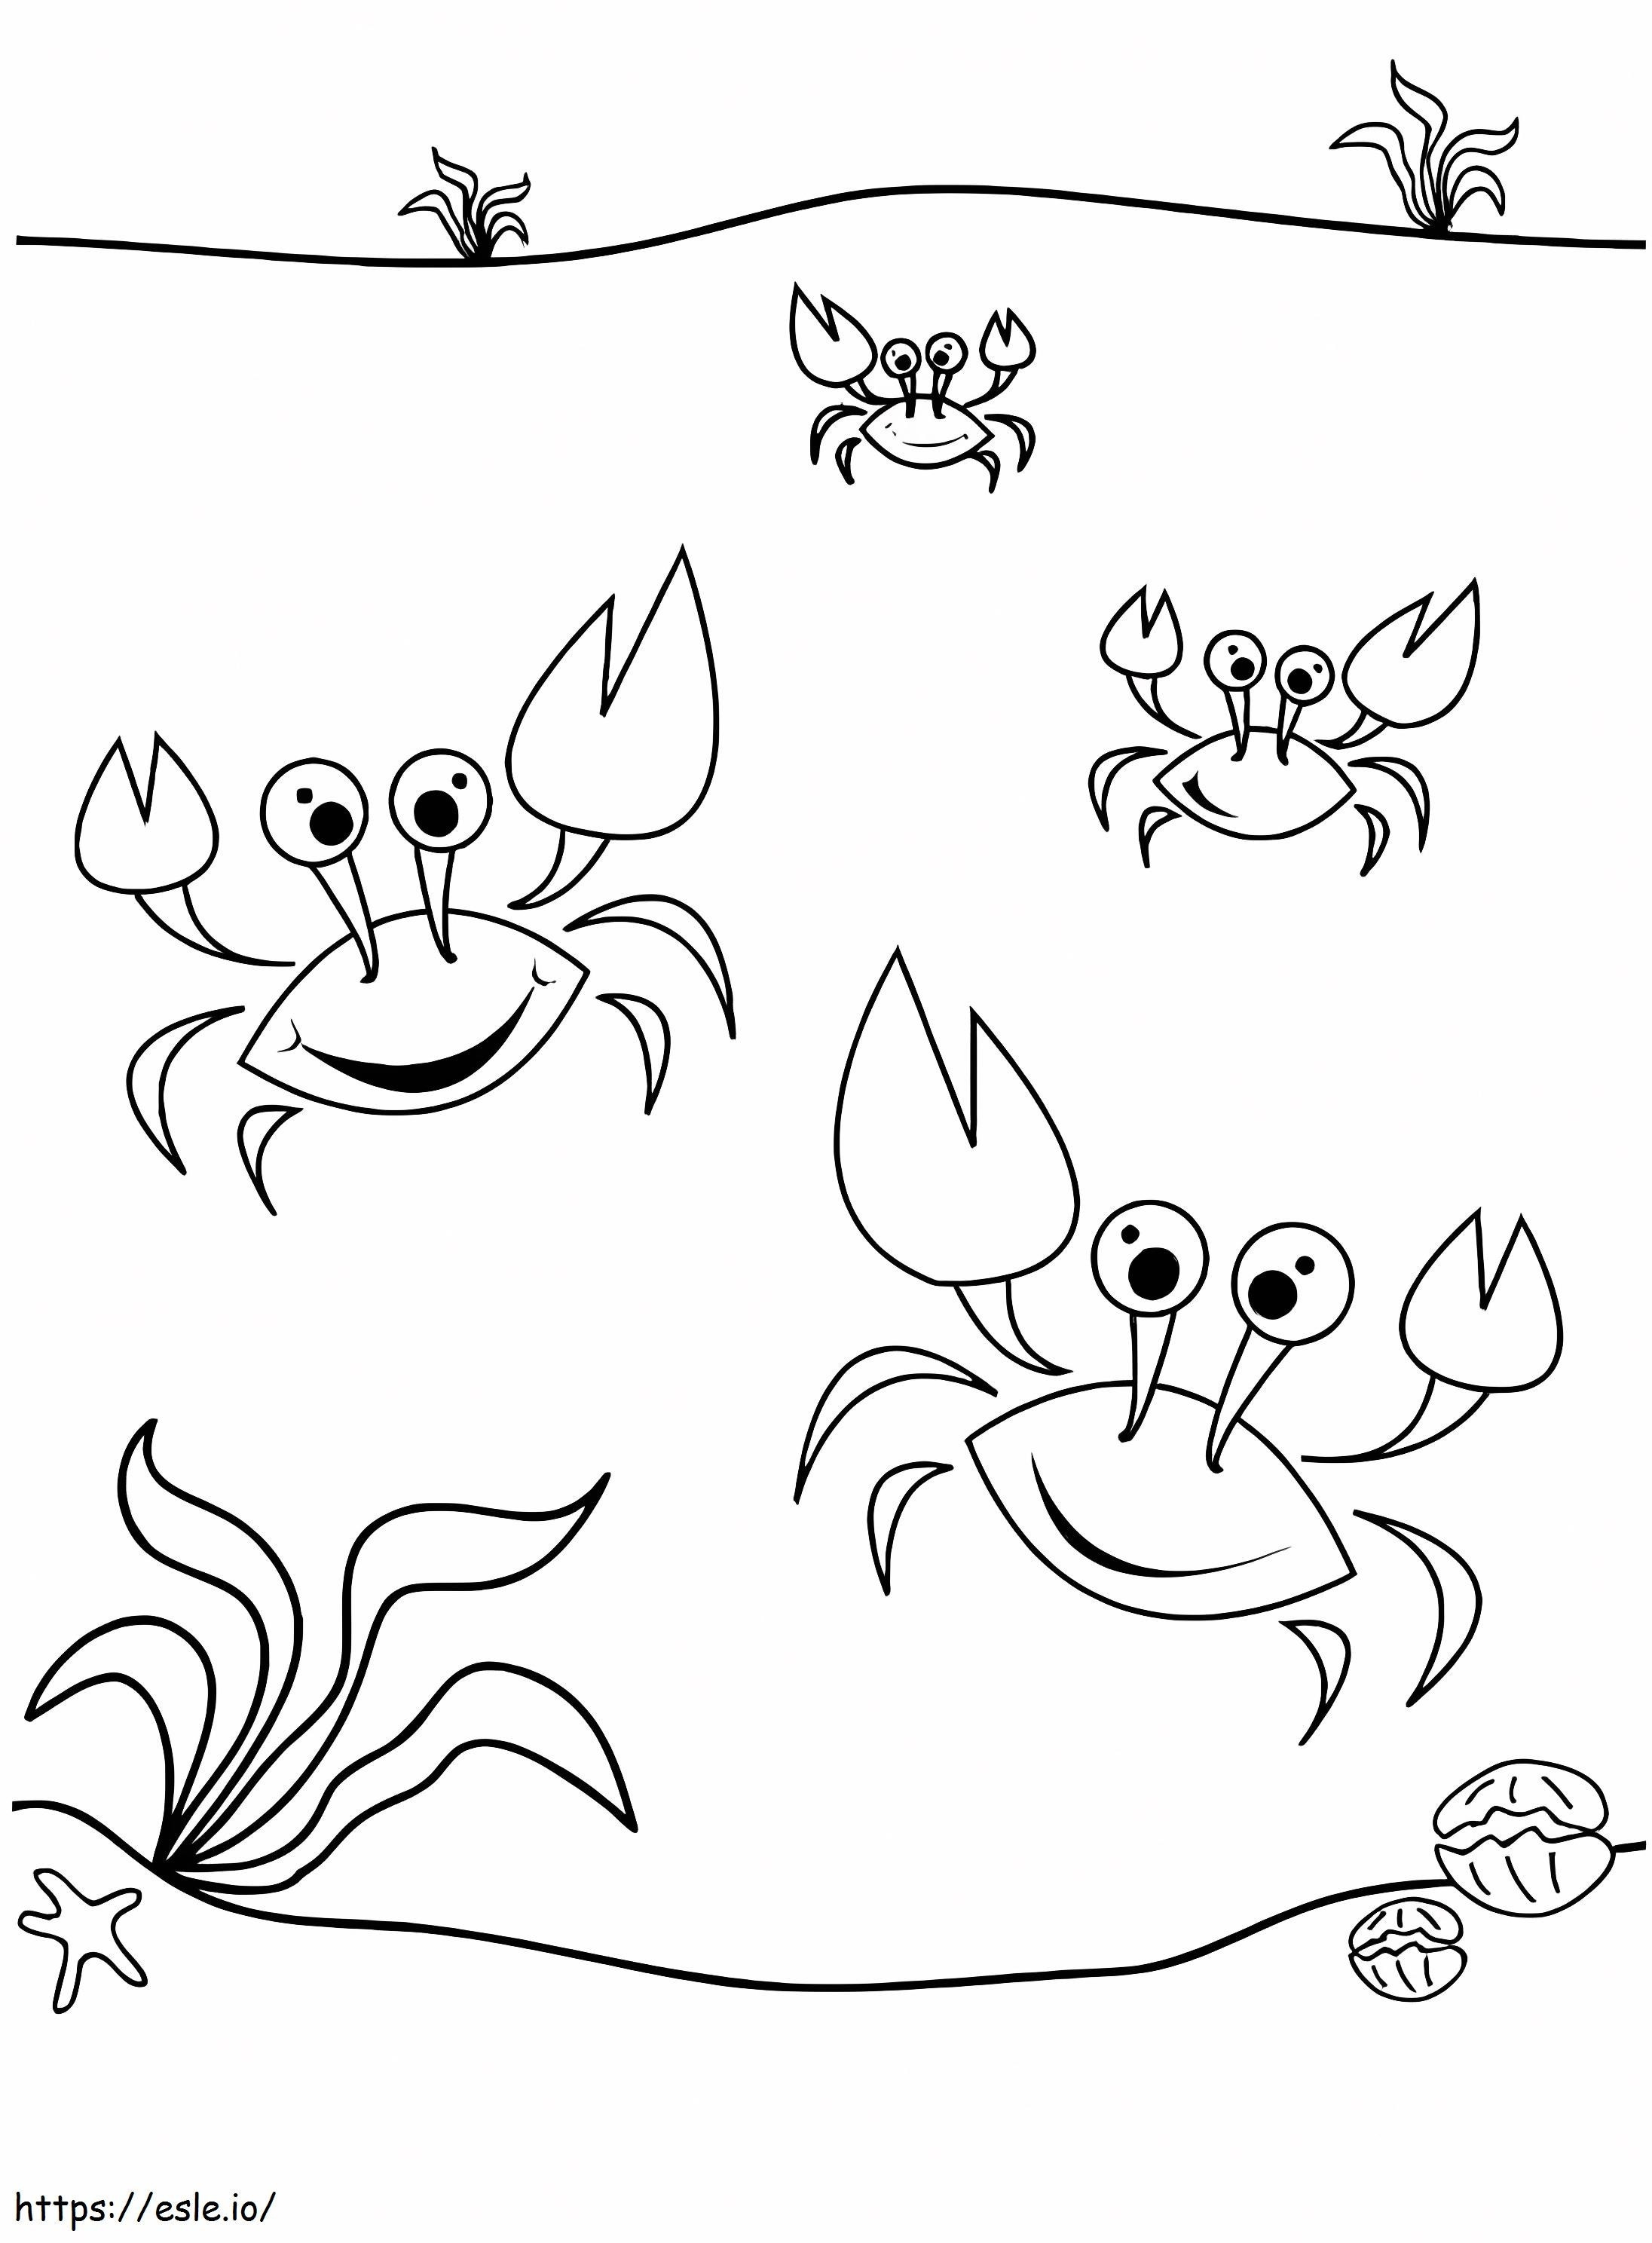 Vier dansende krabben kleurplaat kleurplaat